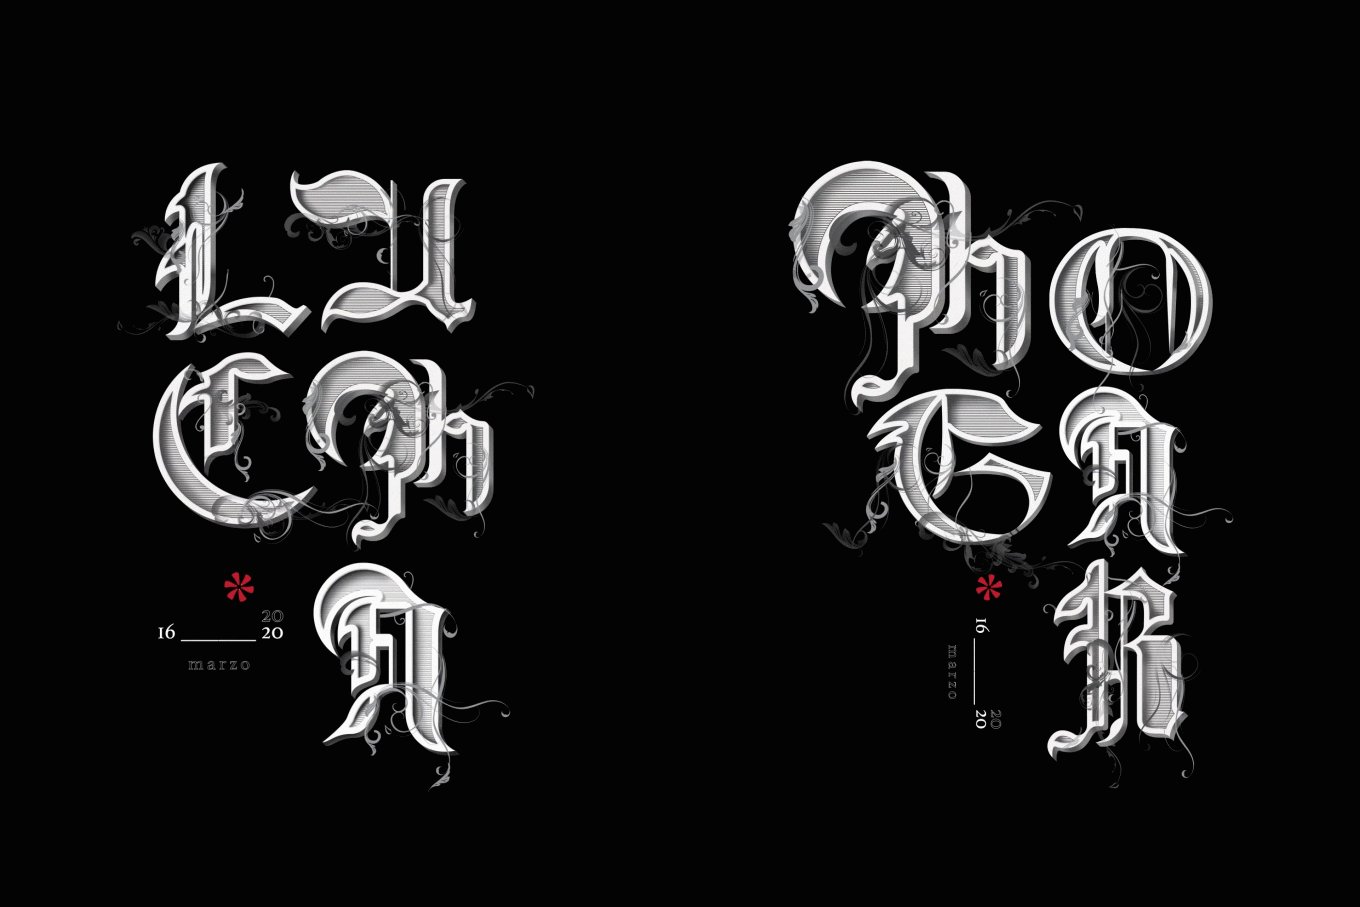 Gothic 19 | Tipografía